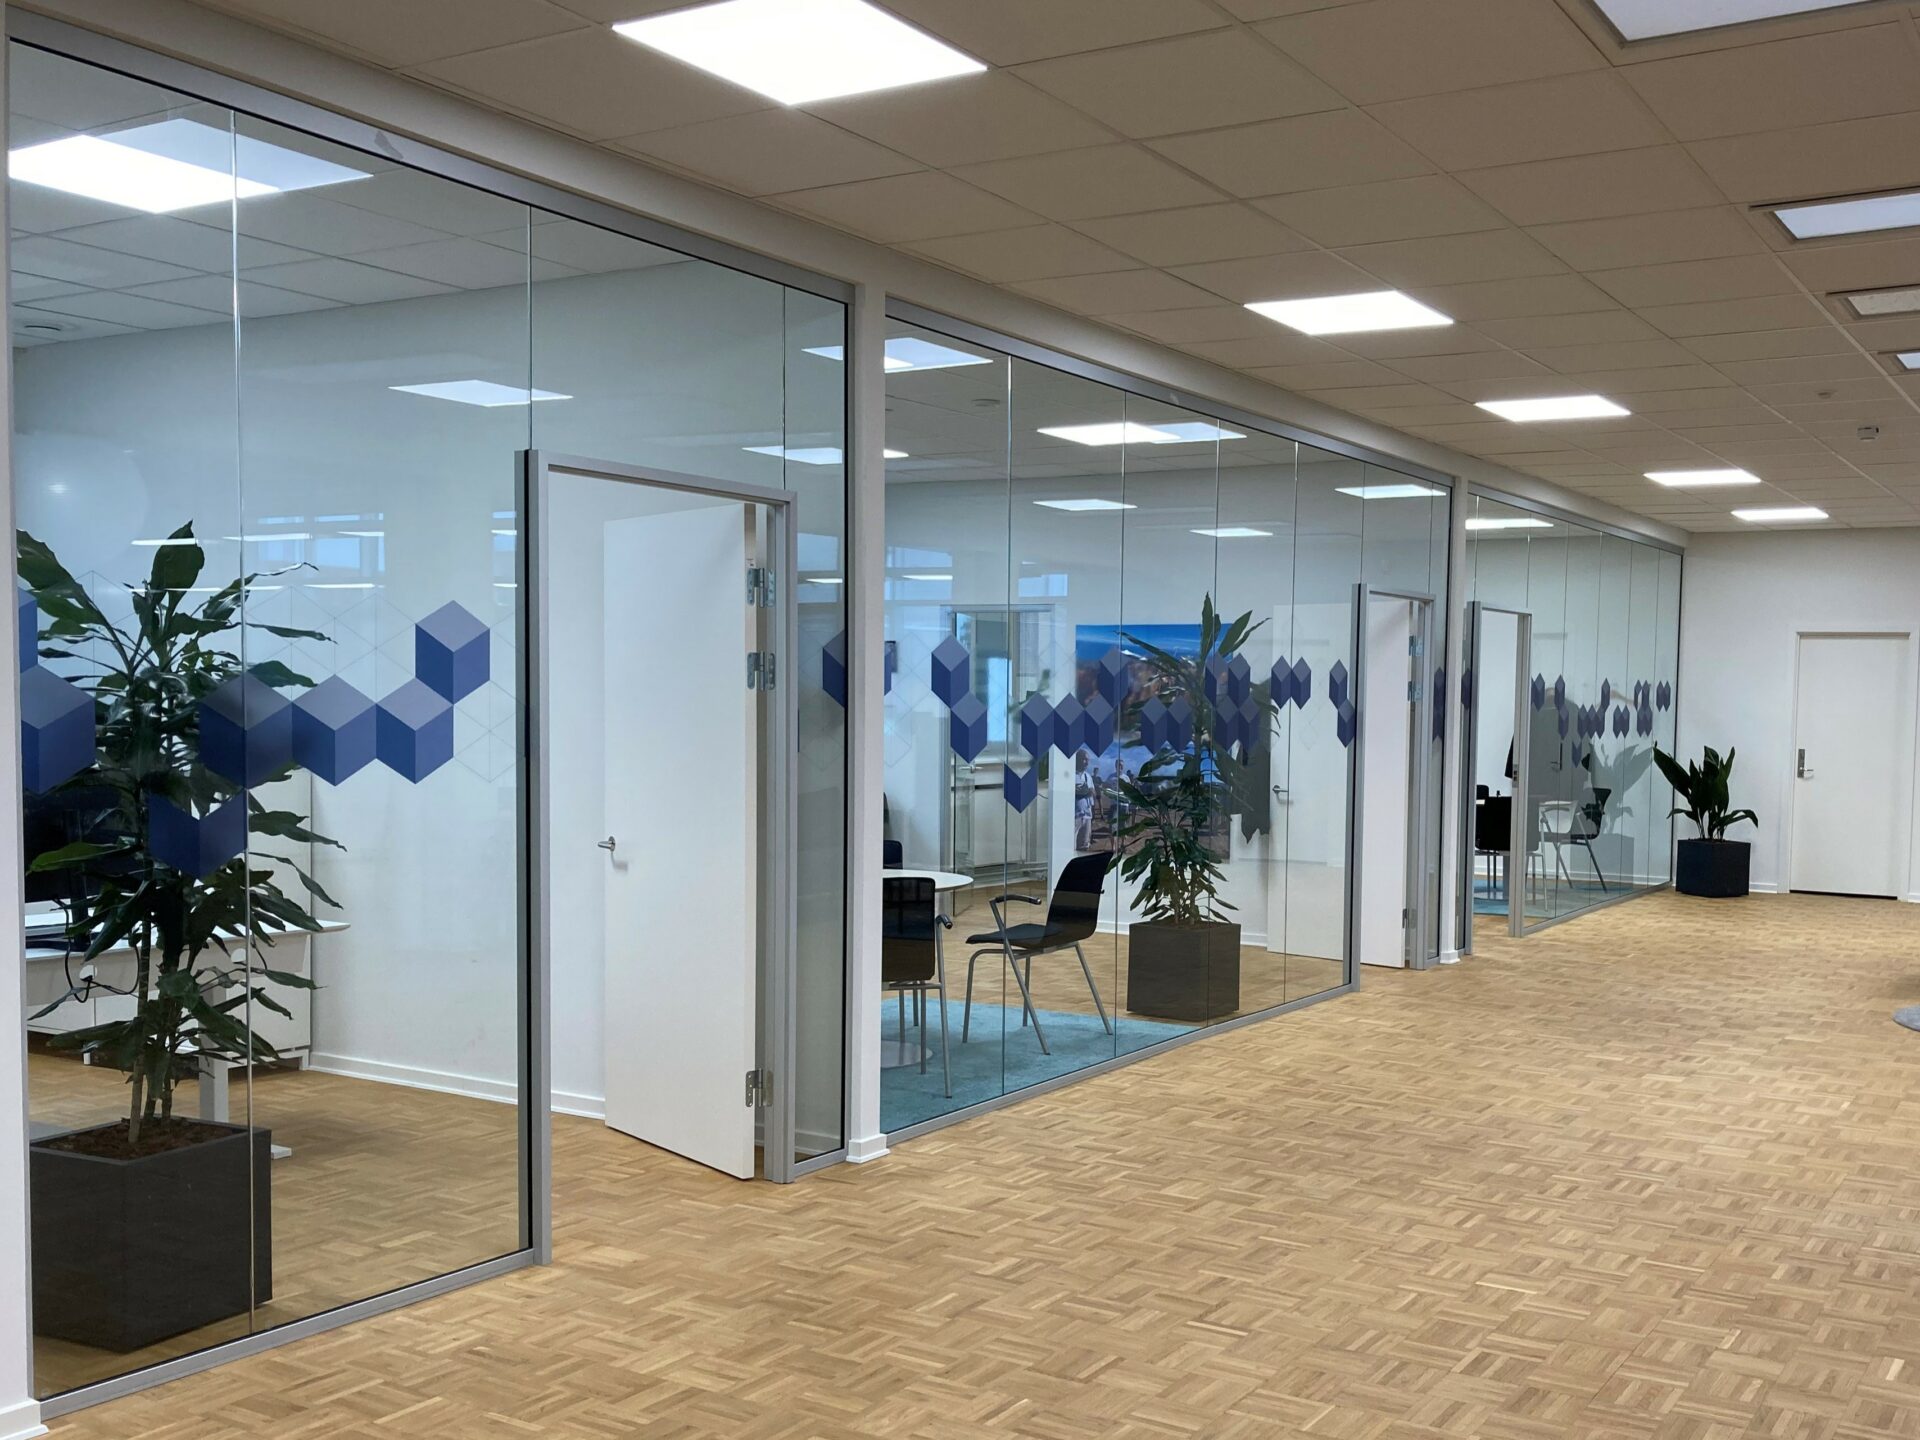 Glasvægge giver lys og lethed på kontoret